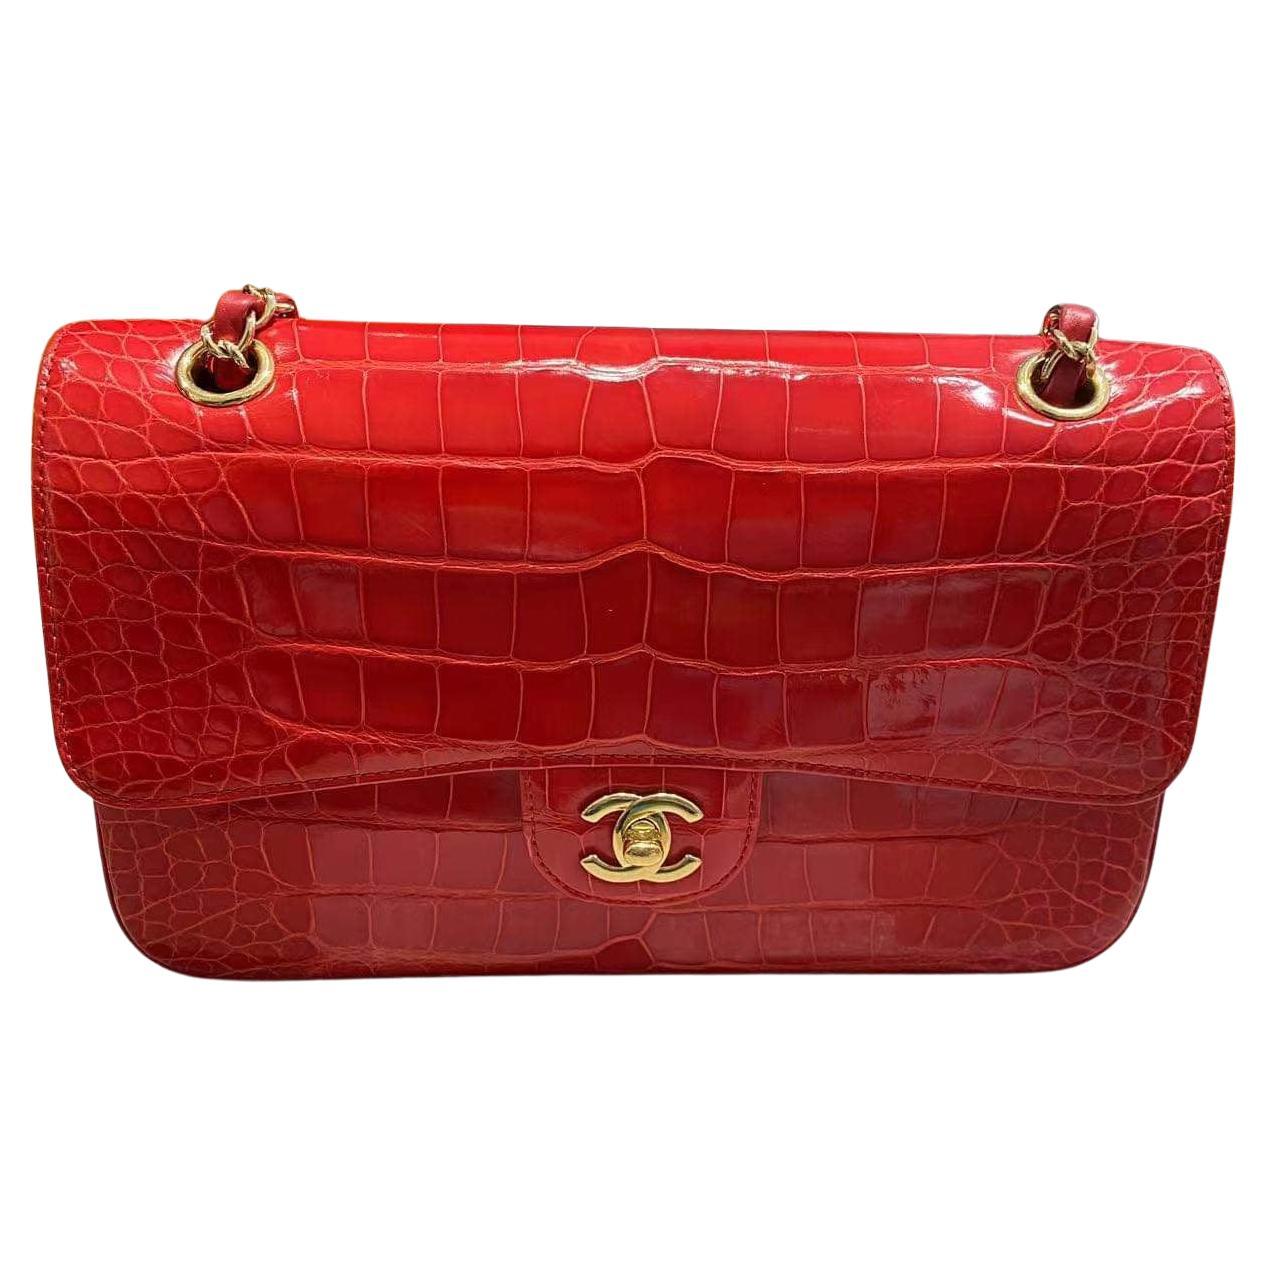 Chanel Medium Tasche mit doppelter Klappe aus glänzendem rotem Alligatorleder mit goldenen Beschlägen 